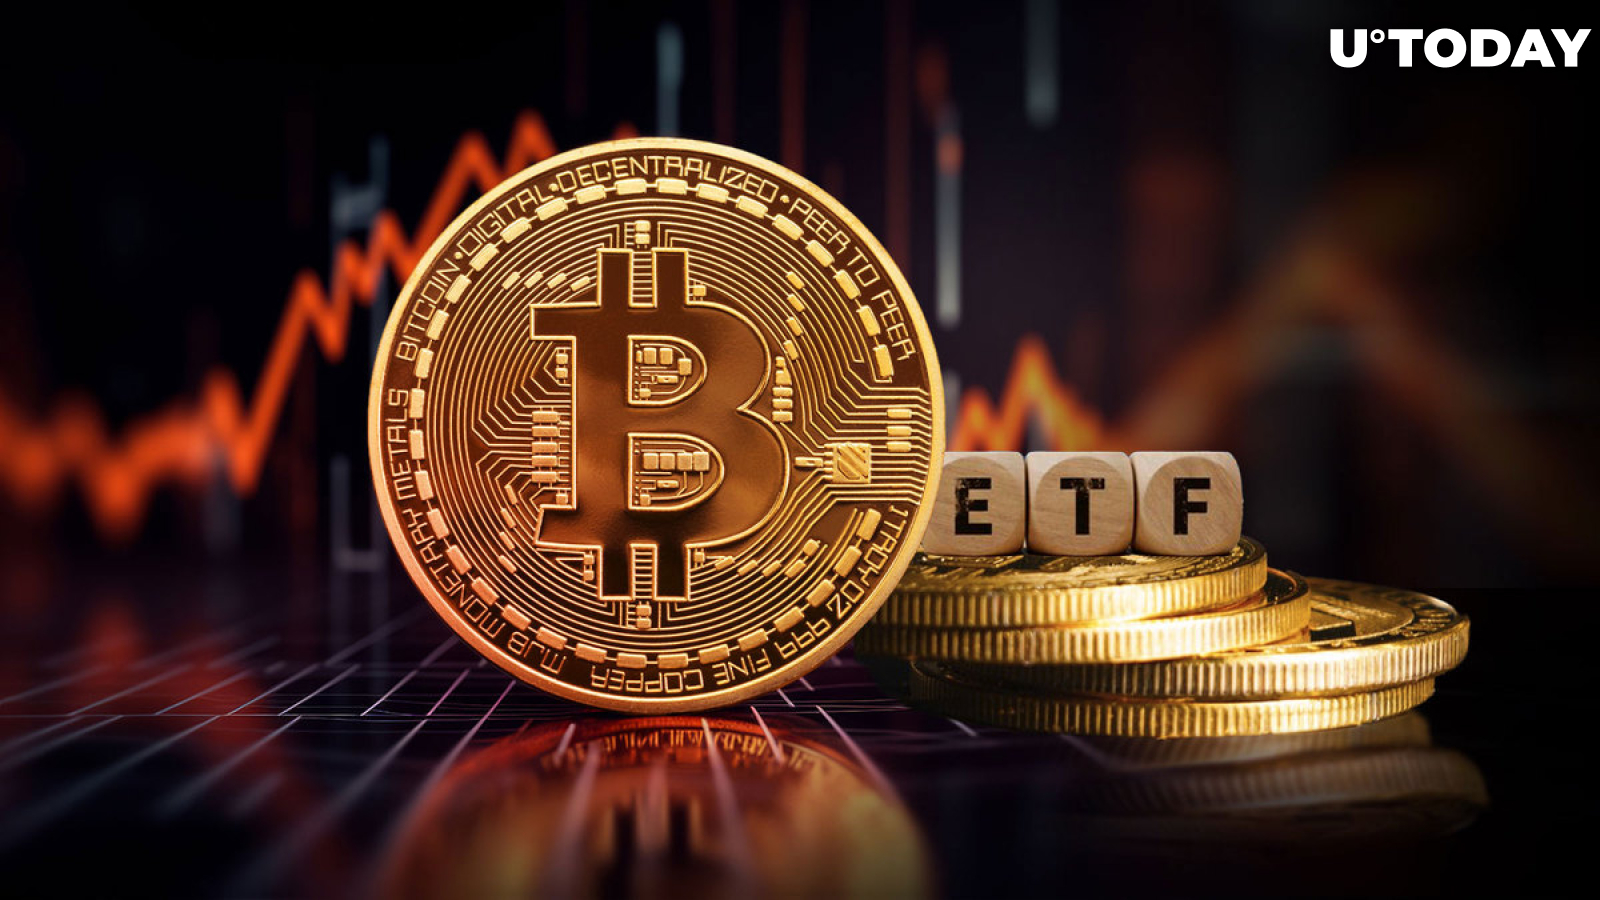 Zit Bitcoin in de problemen? Het aantal ETF-houders keldert